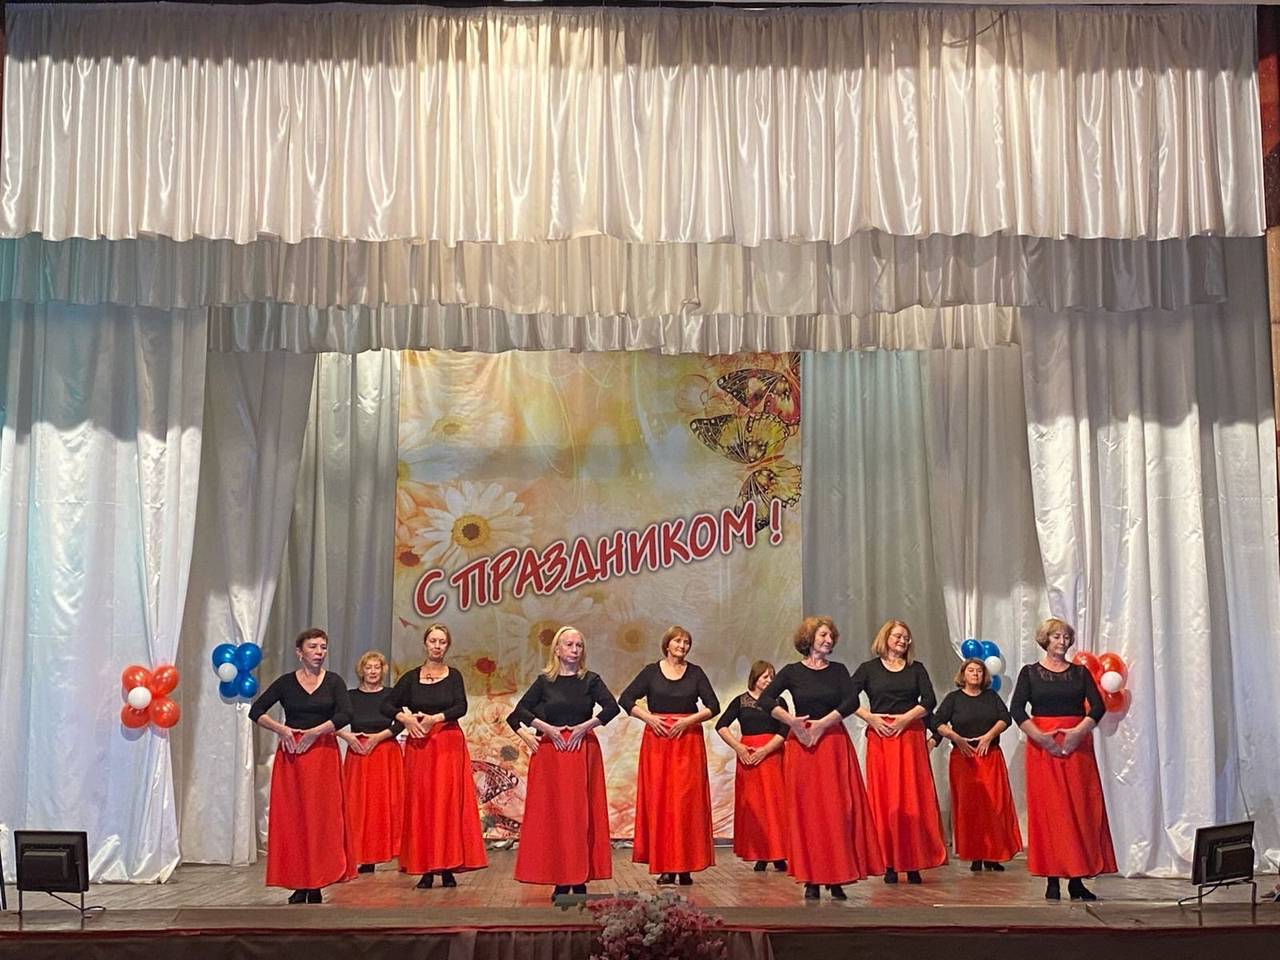 Подготовка к праздничному мероприятию началась в Доме культуры «Солнечный» в Щаповском